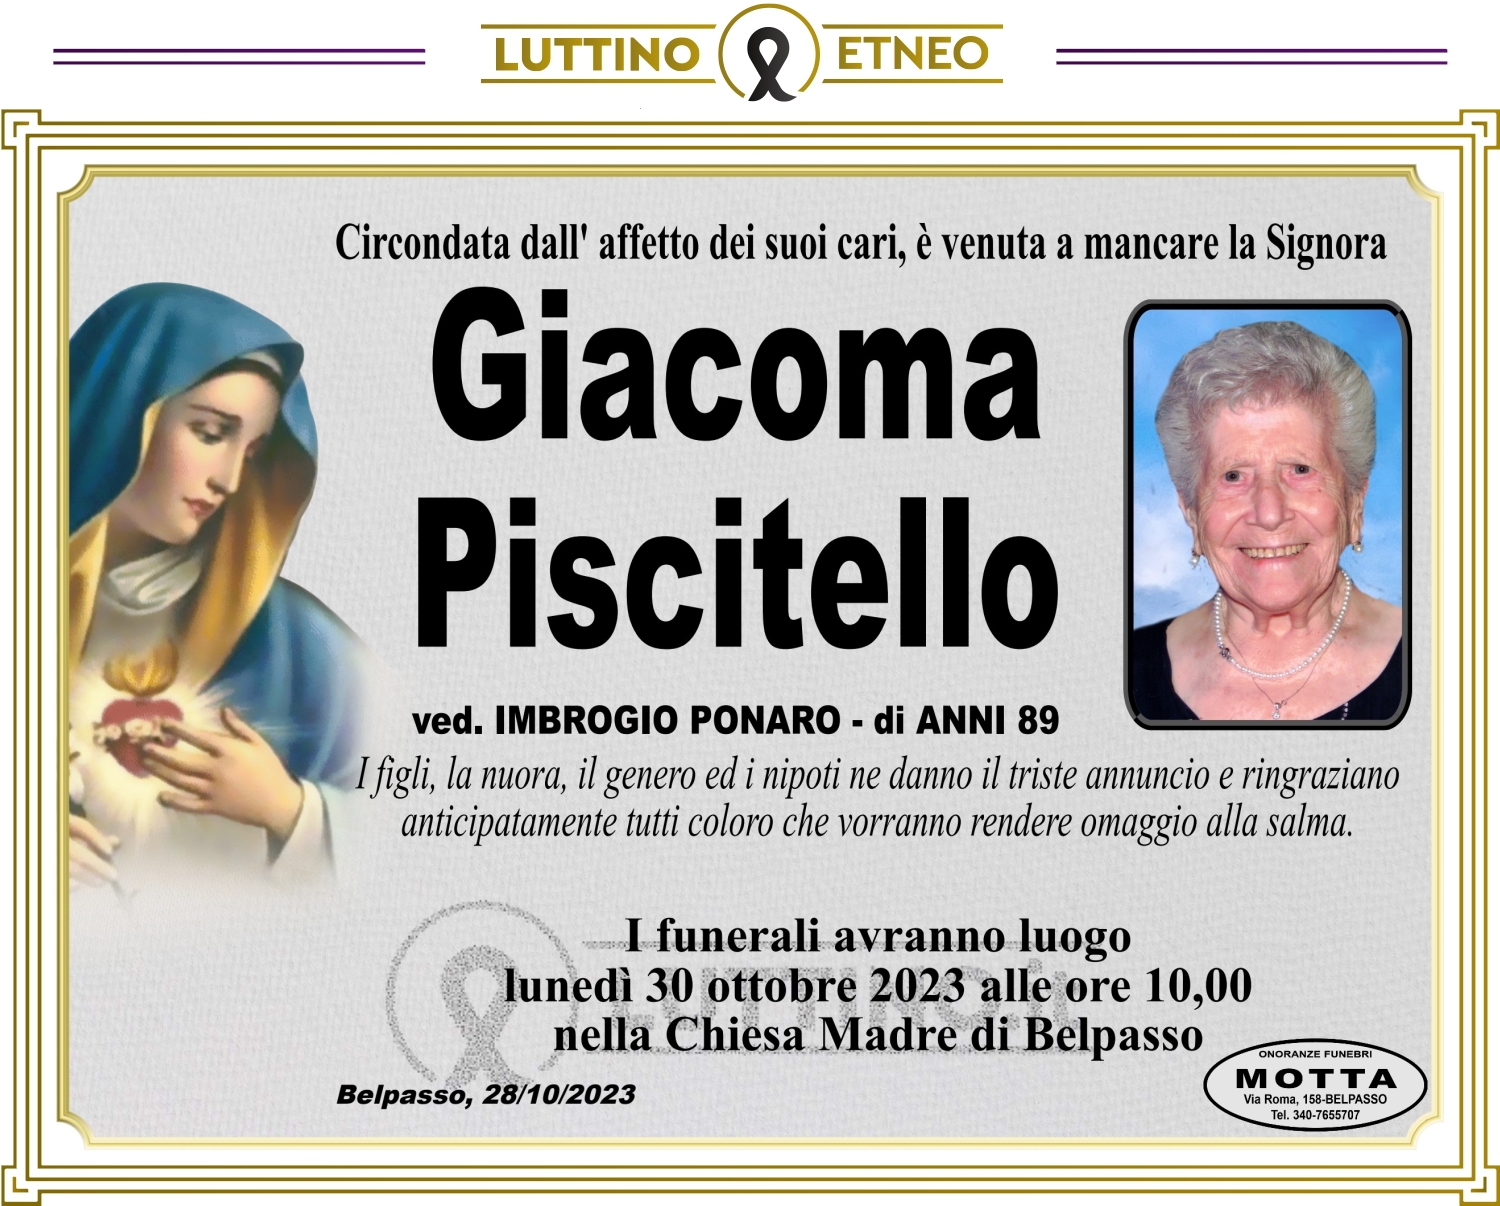 Giacoma Piscitello